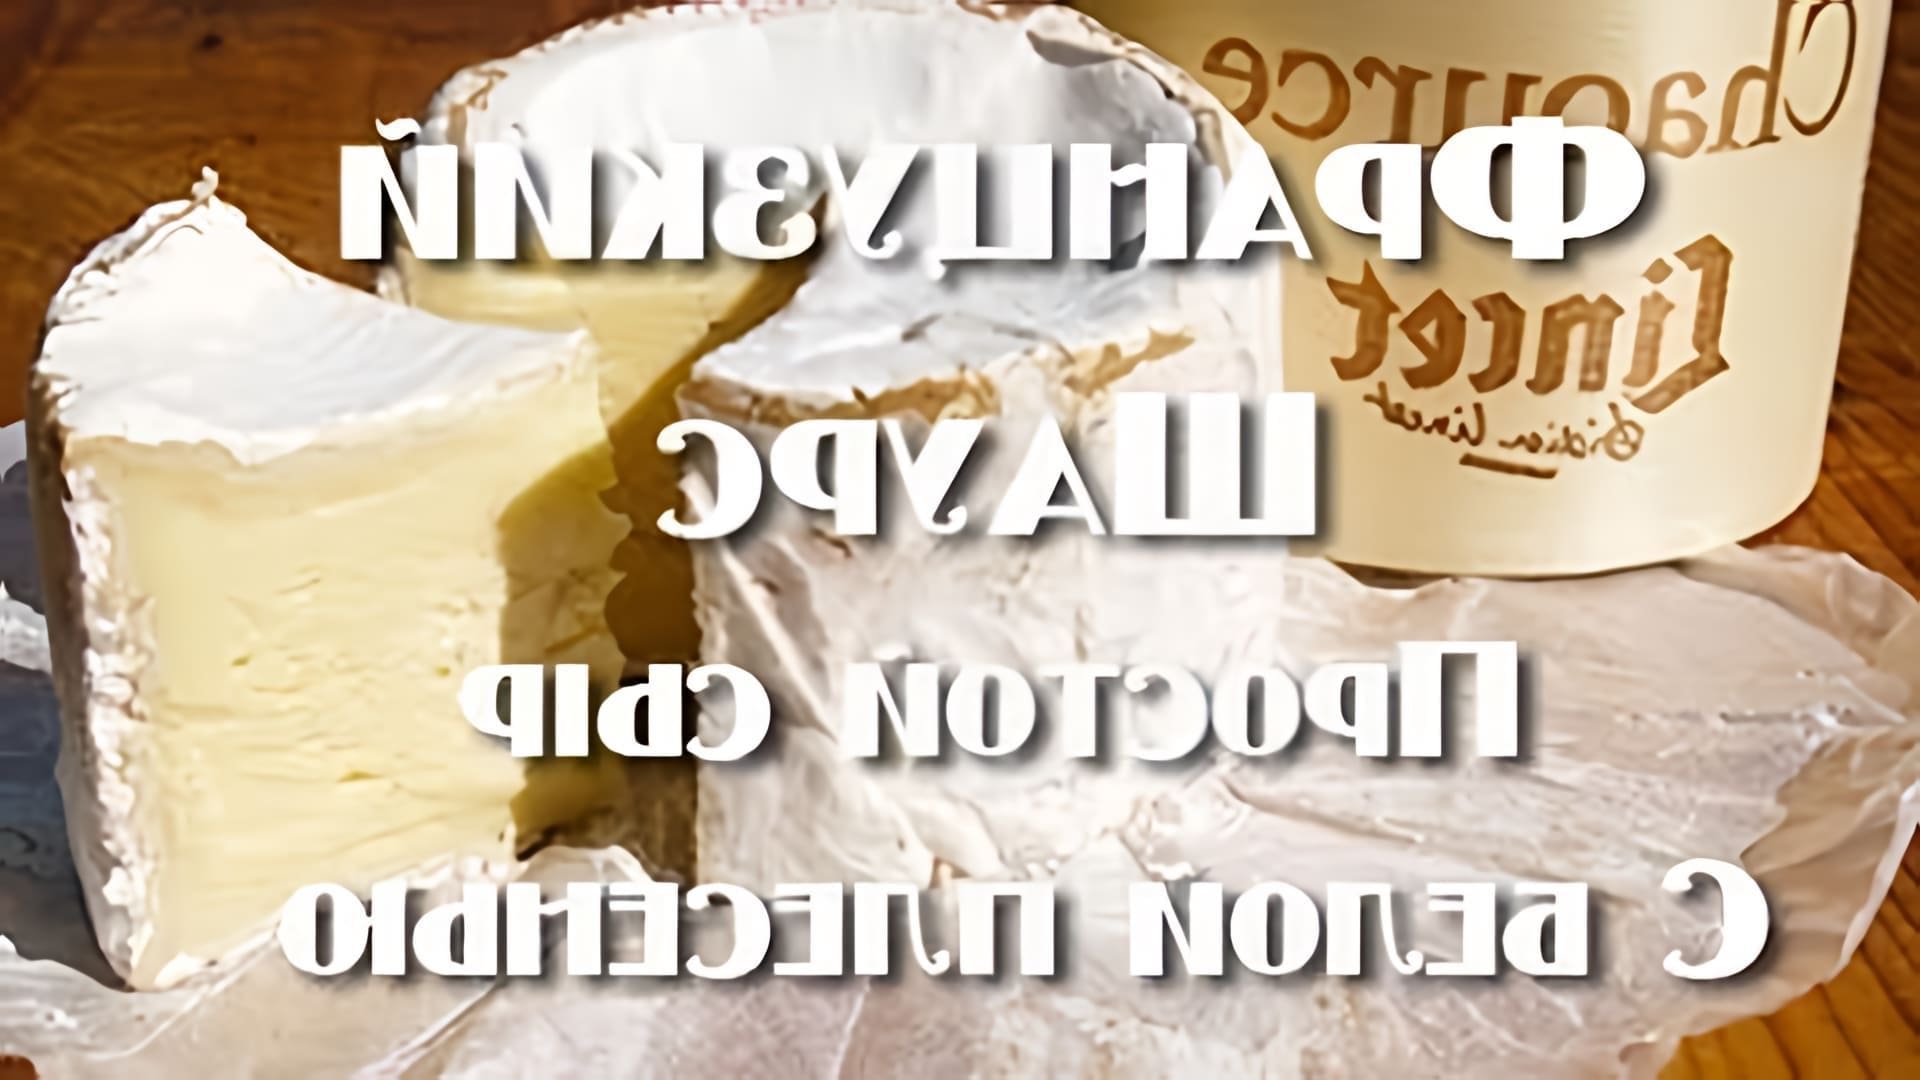 Шаурс - это французский мягкий сыр с белой плесенью, который делают в одноименной деревушке в центральной... 